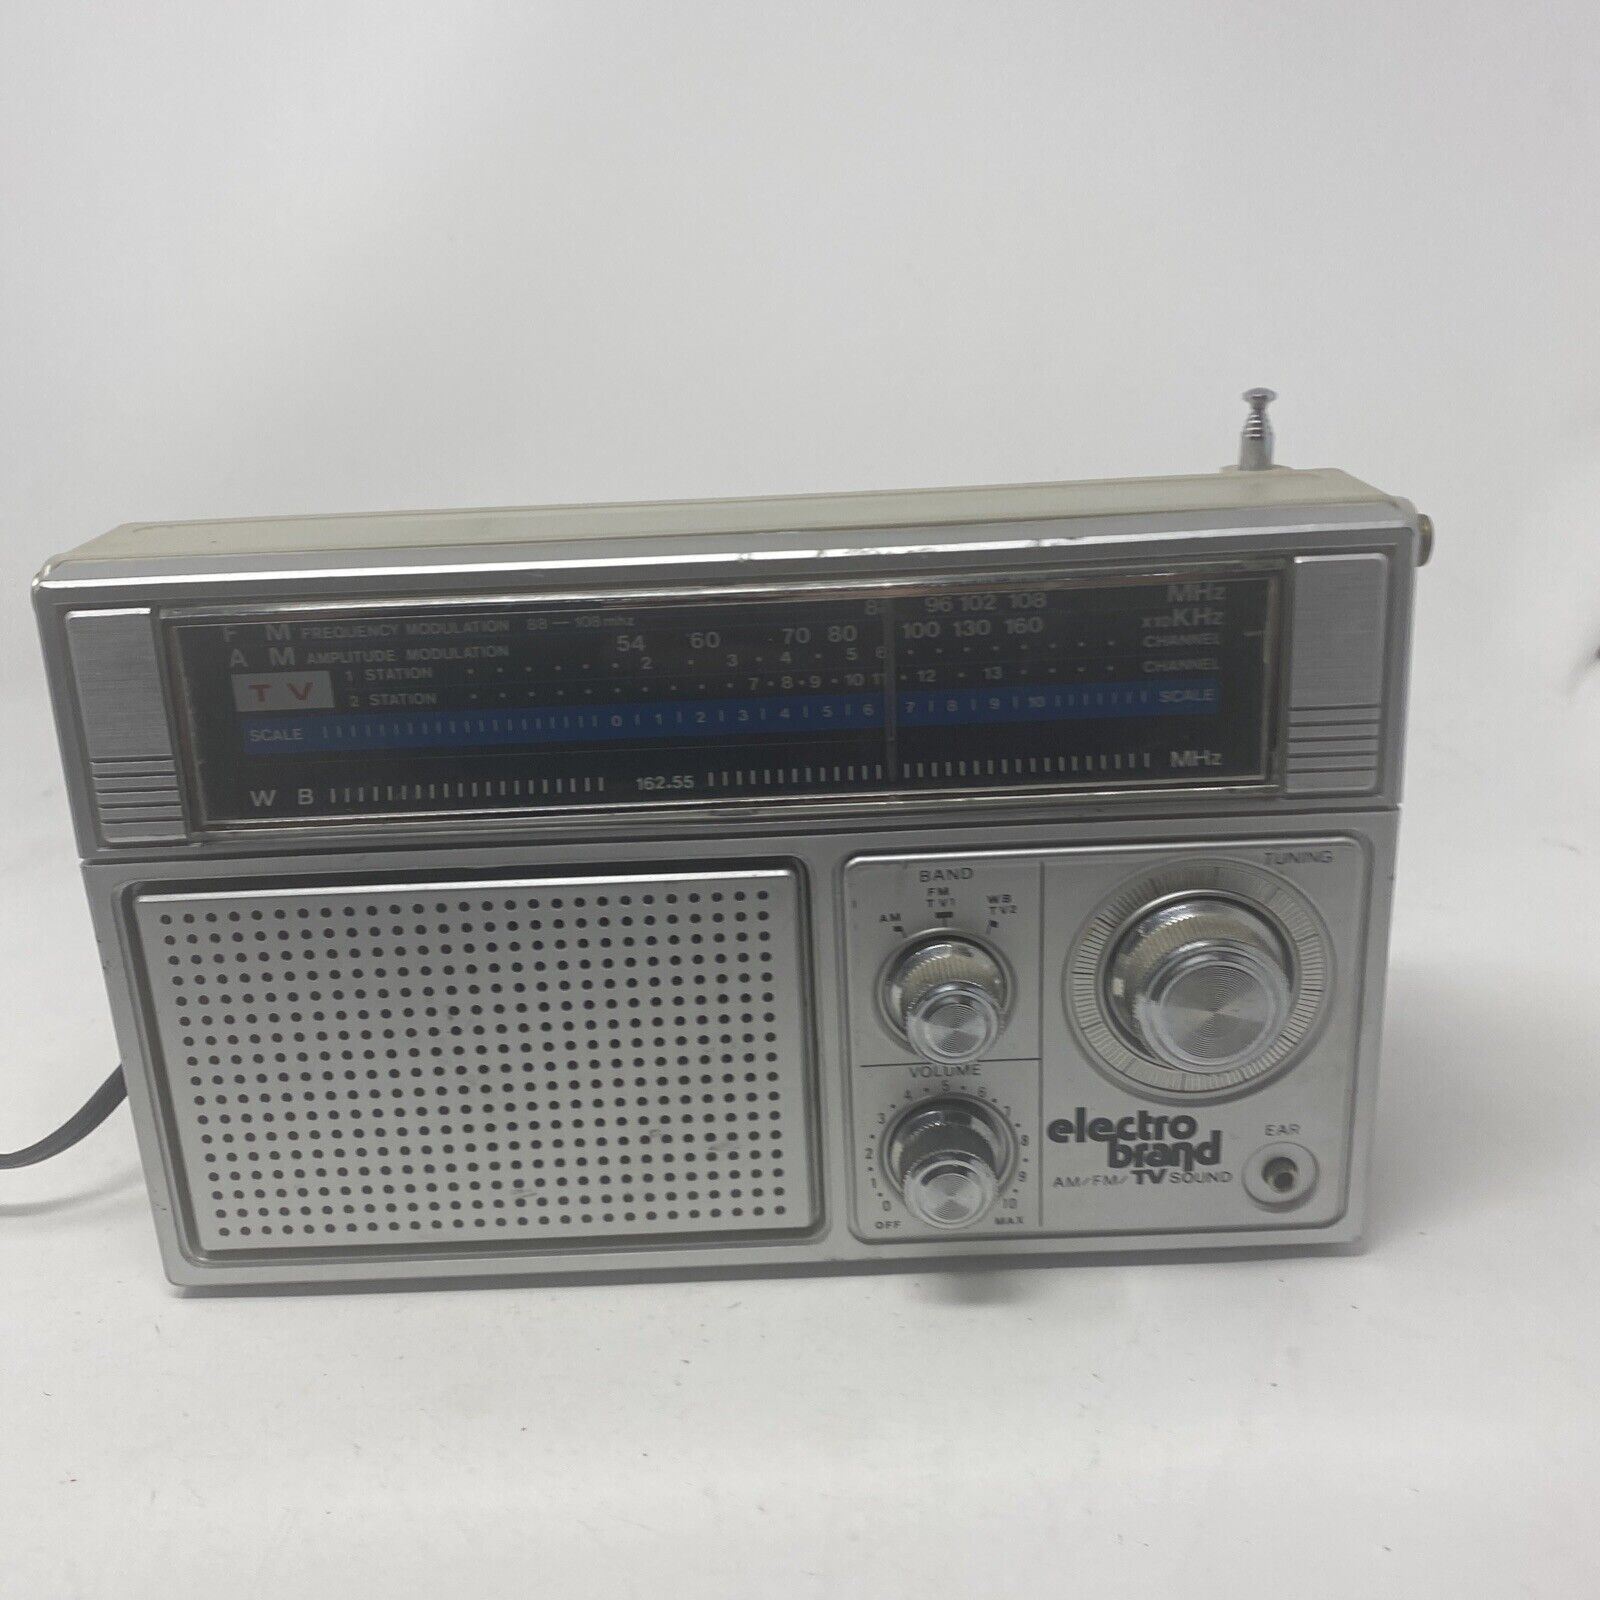 electro brand radio 2145